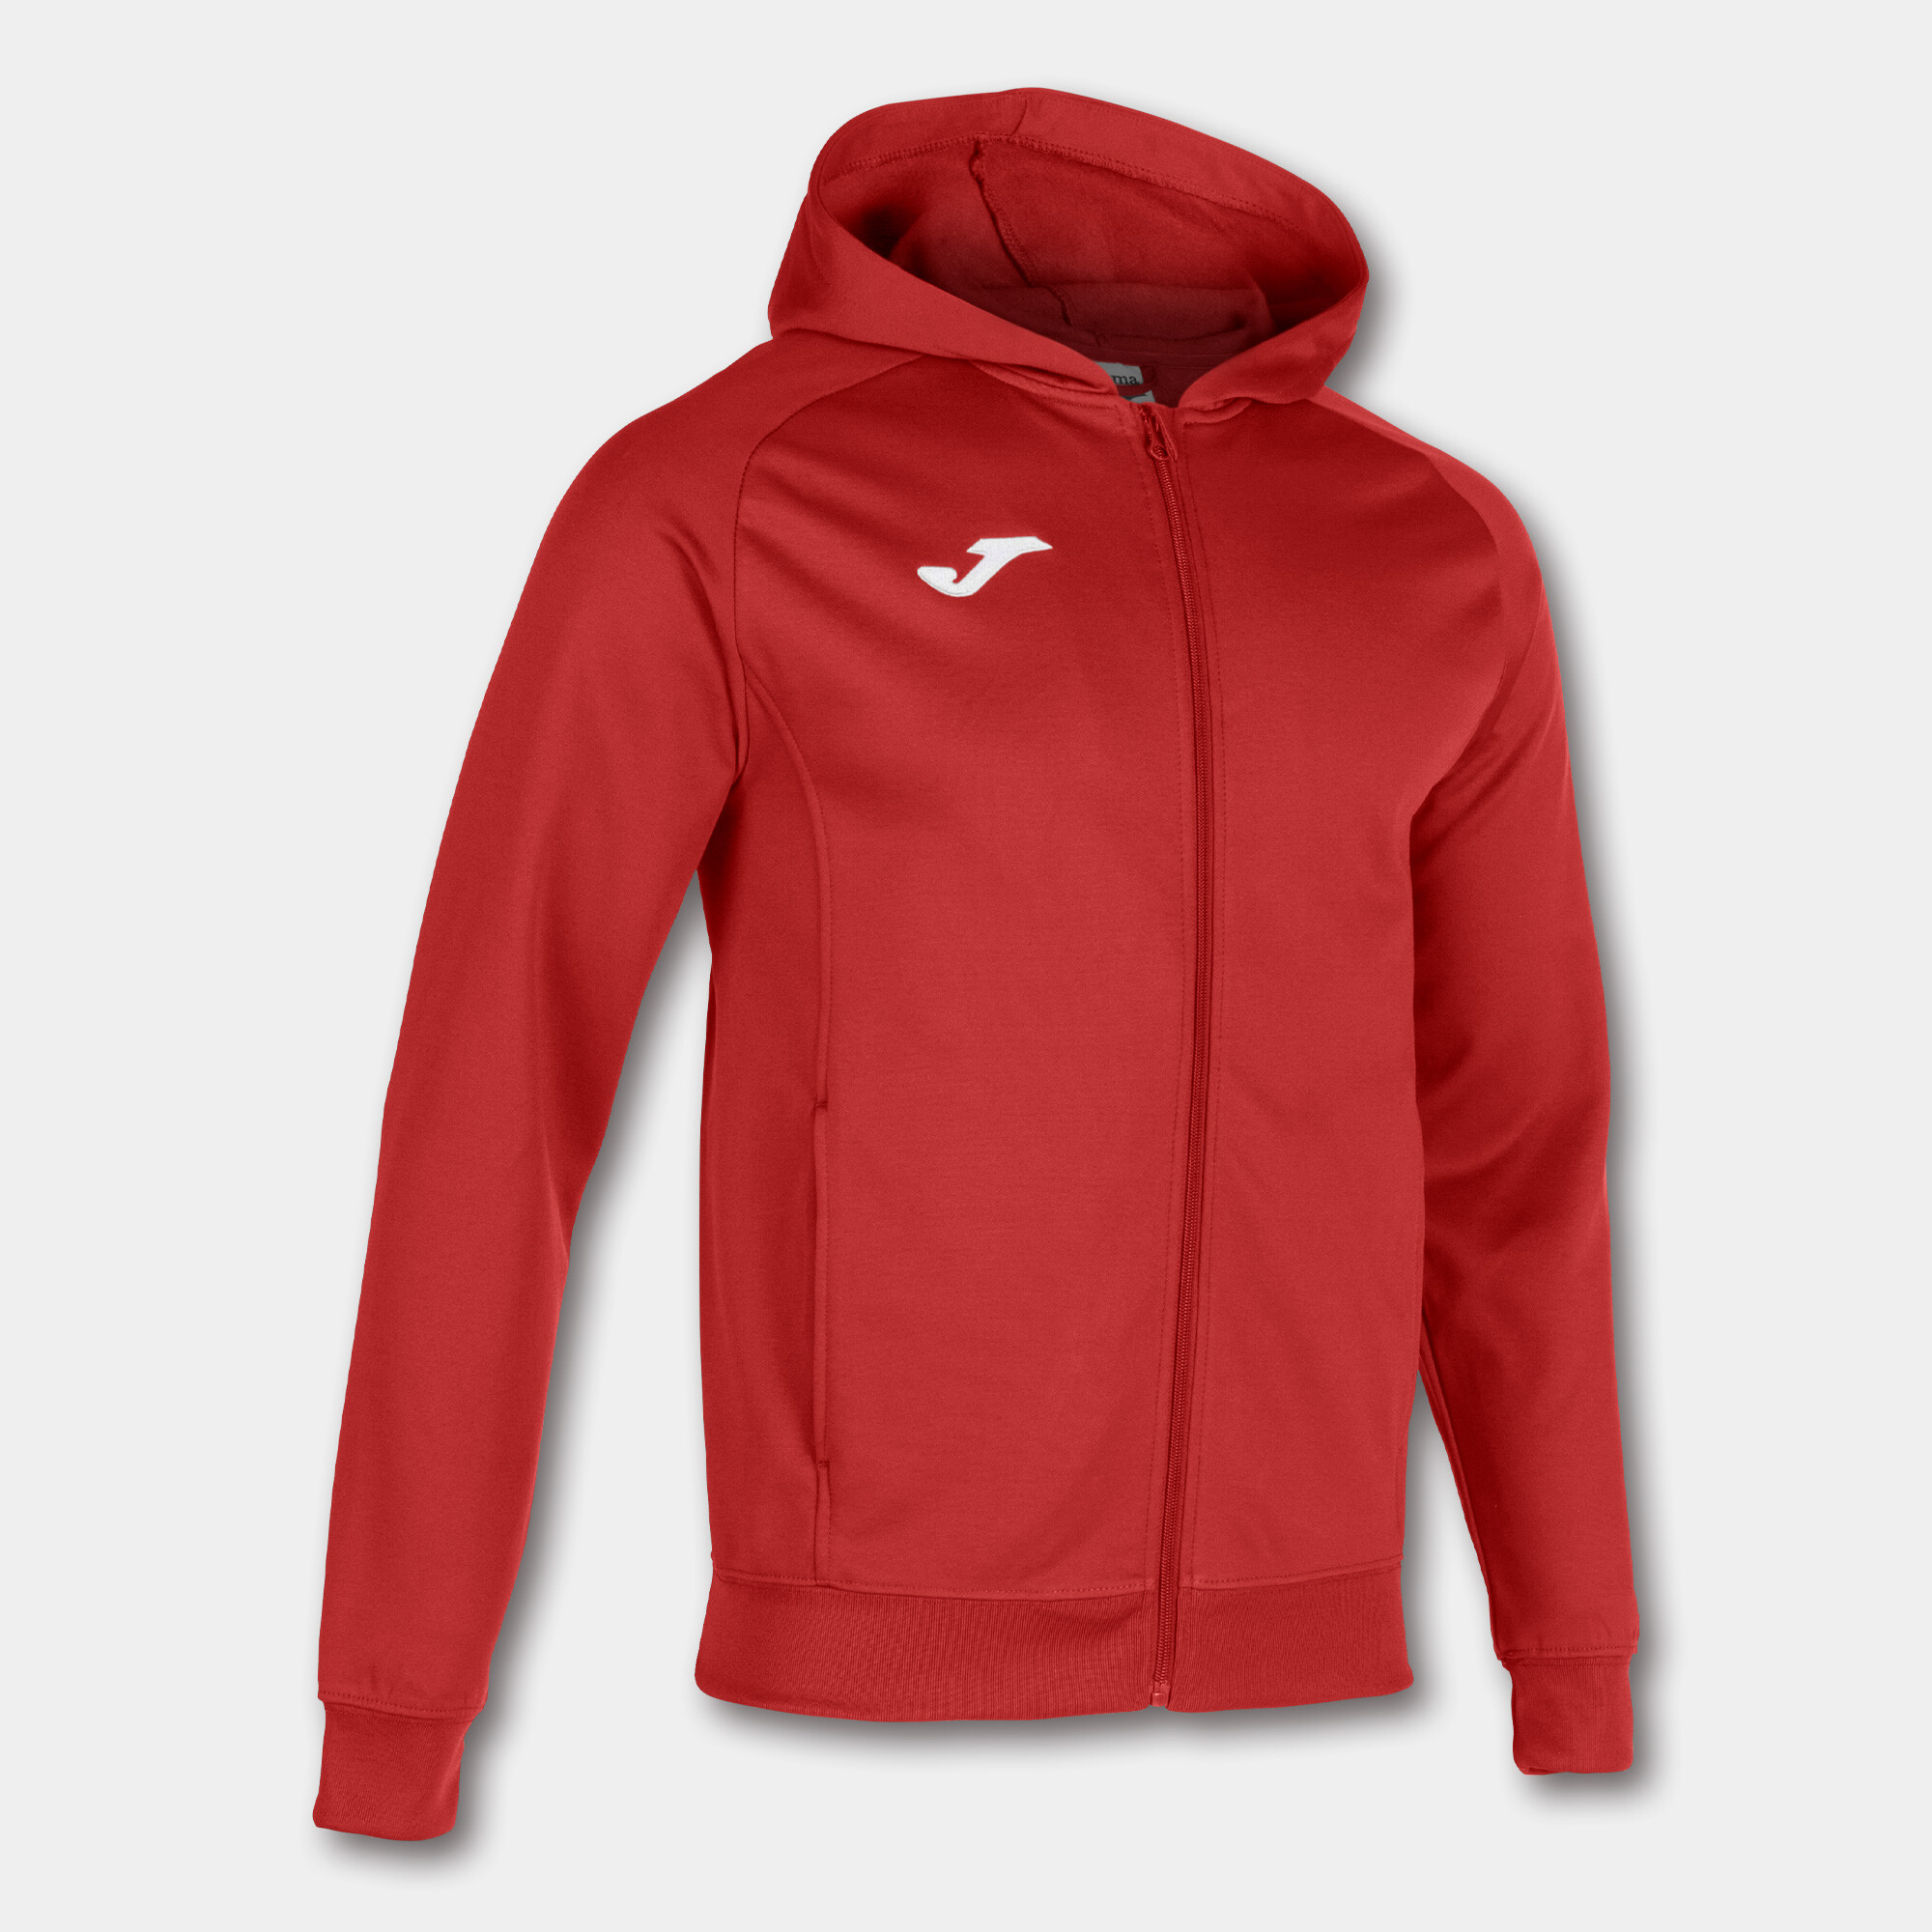 Pánská/chlapecká sportovní bunda Joma Menfis Red